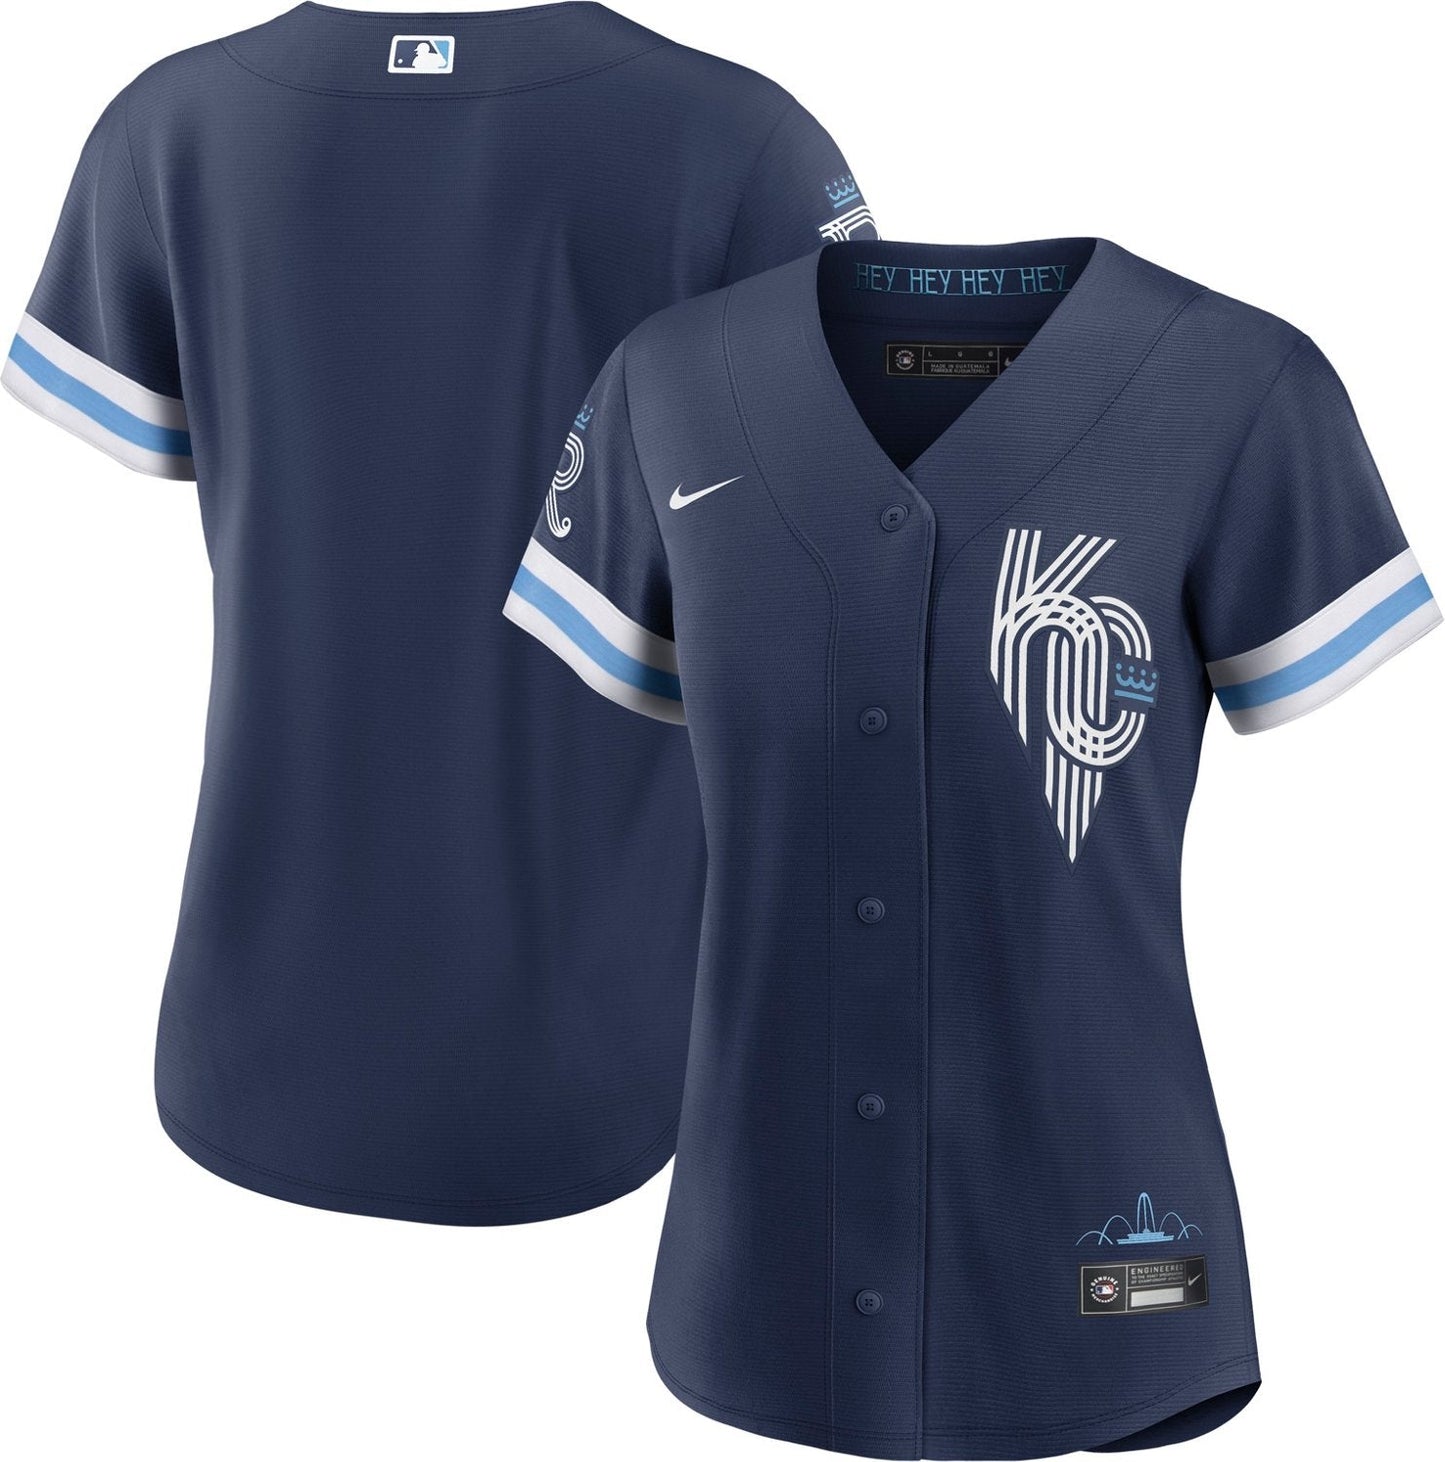 Royals City Connect uniform